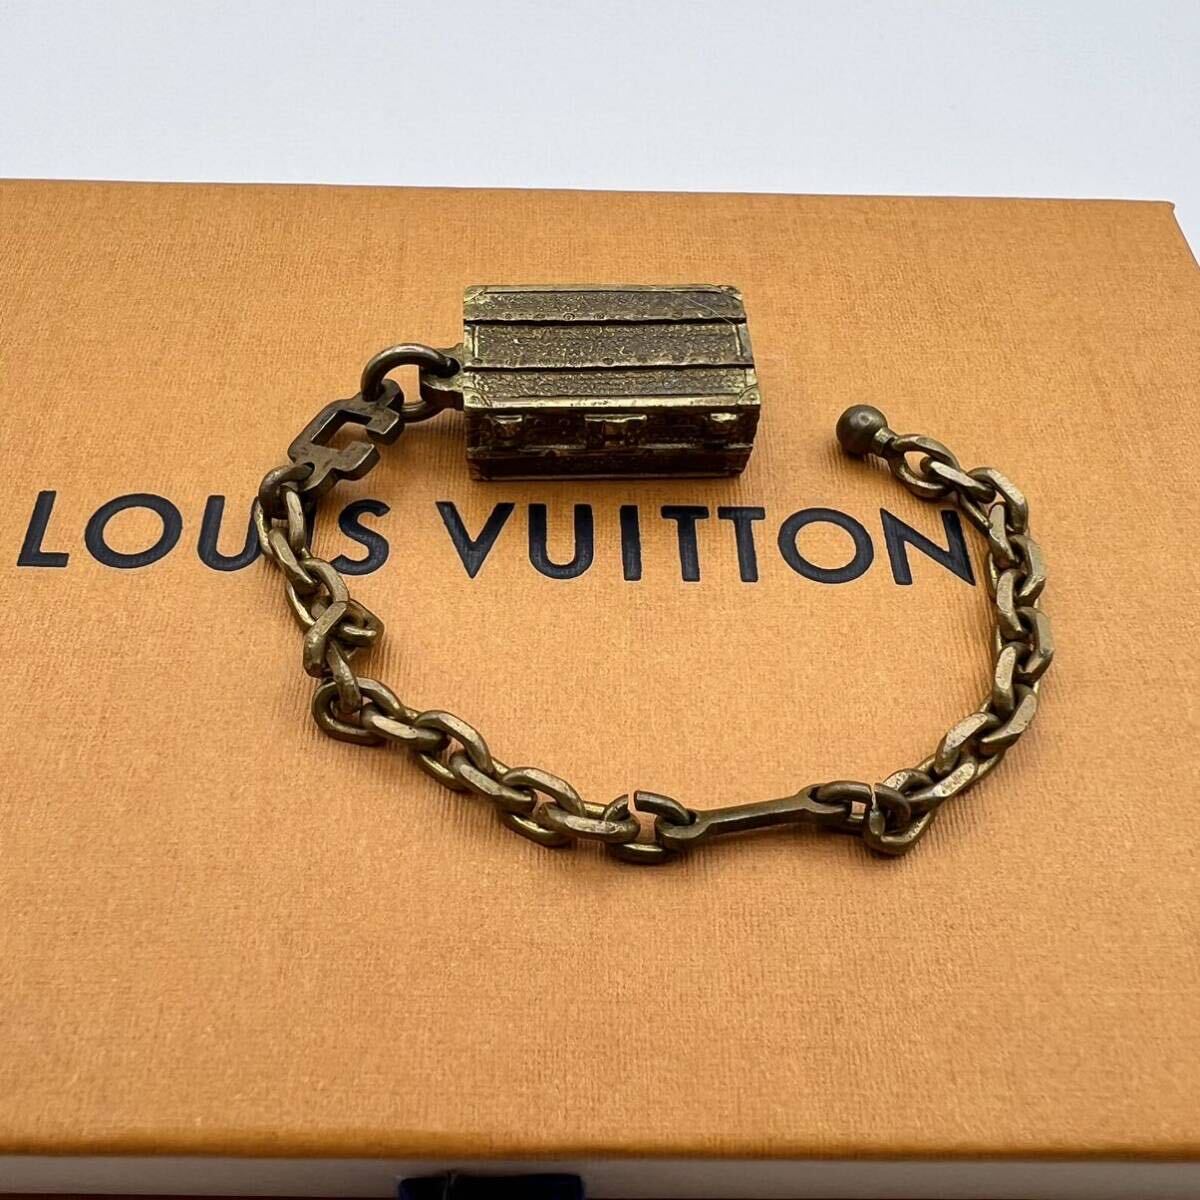 1 jpy ~ Louis Vuitton LOUIS VUITTON bracele Hermes chain charm trunk key holder Gold accessory 